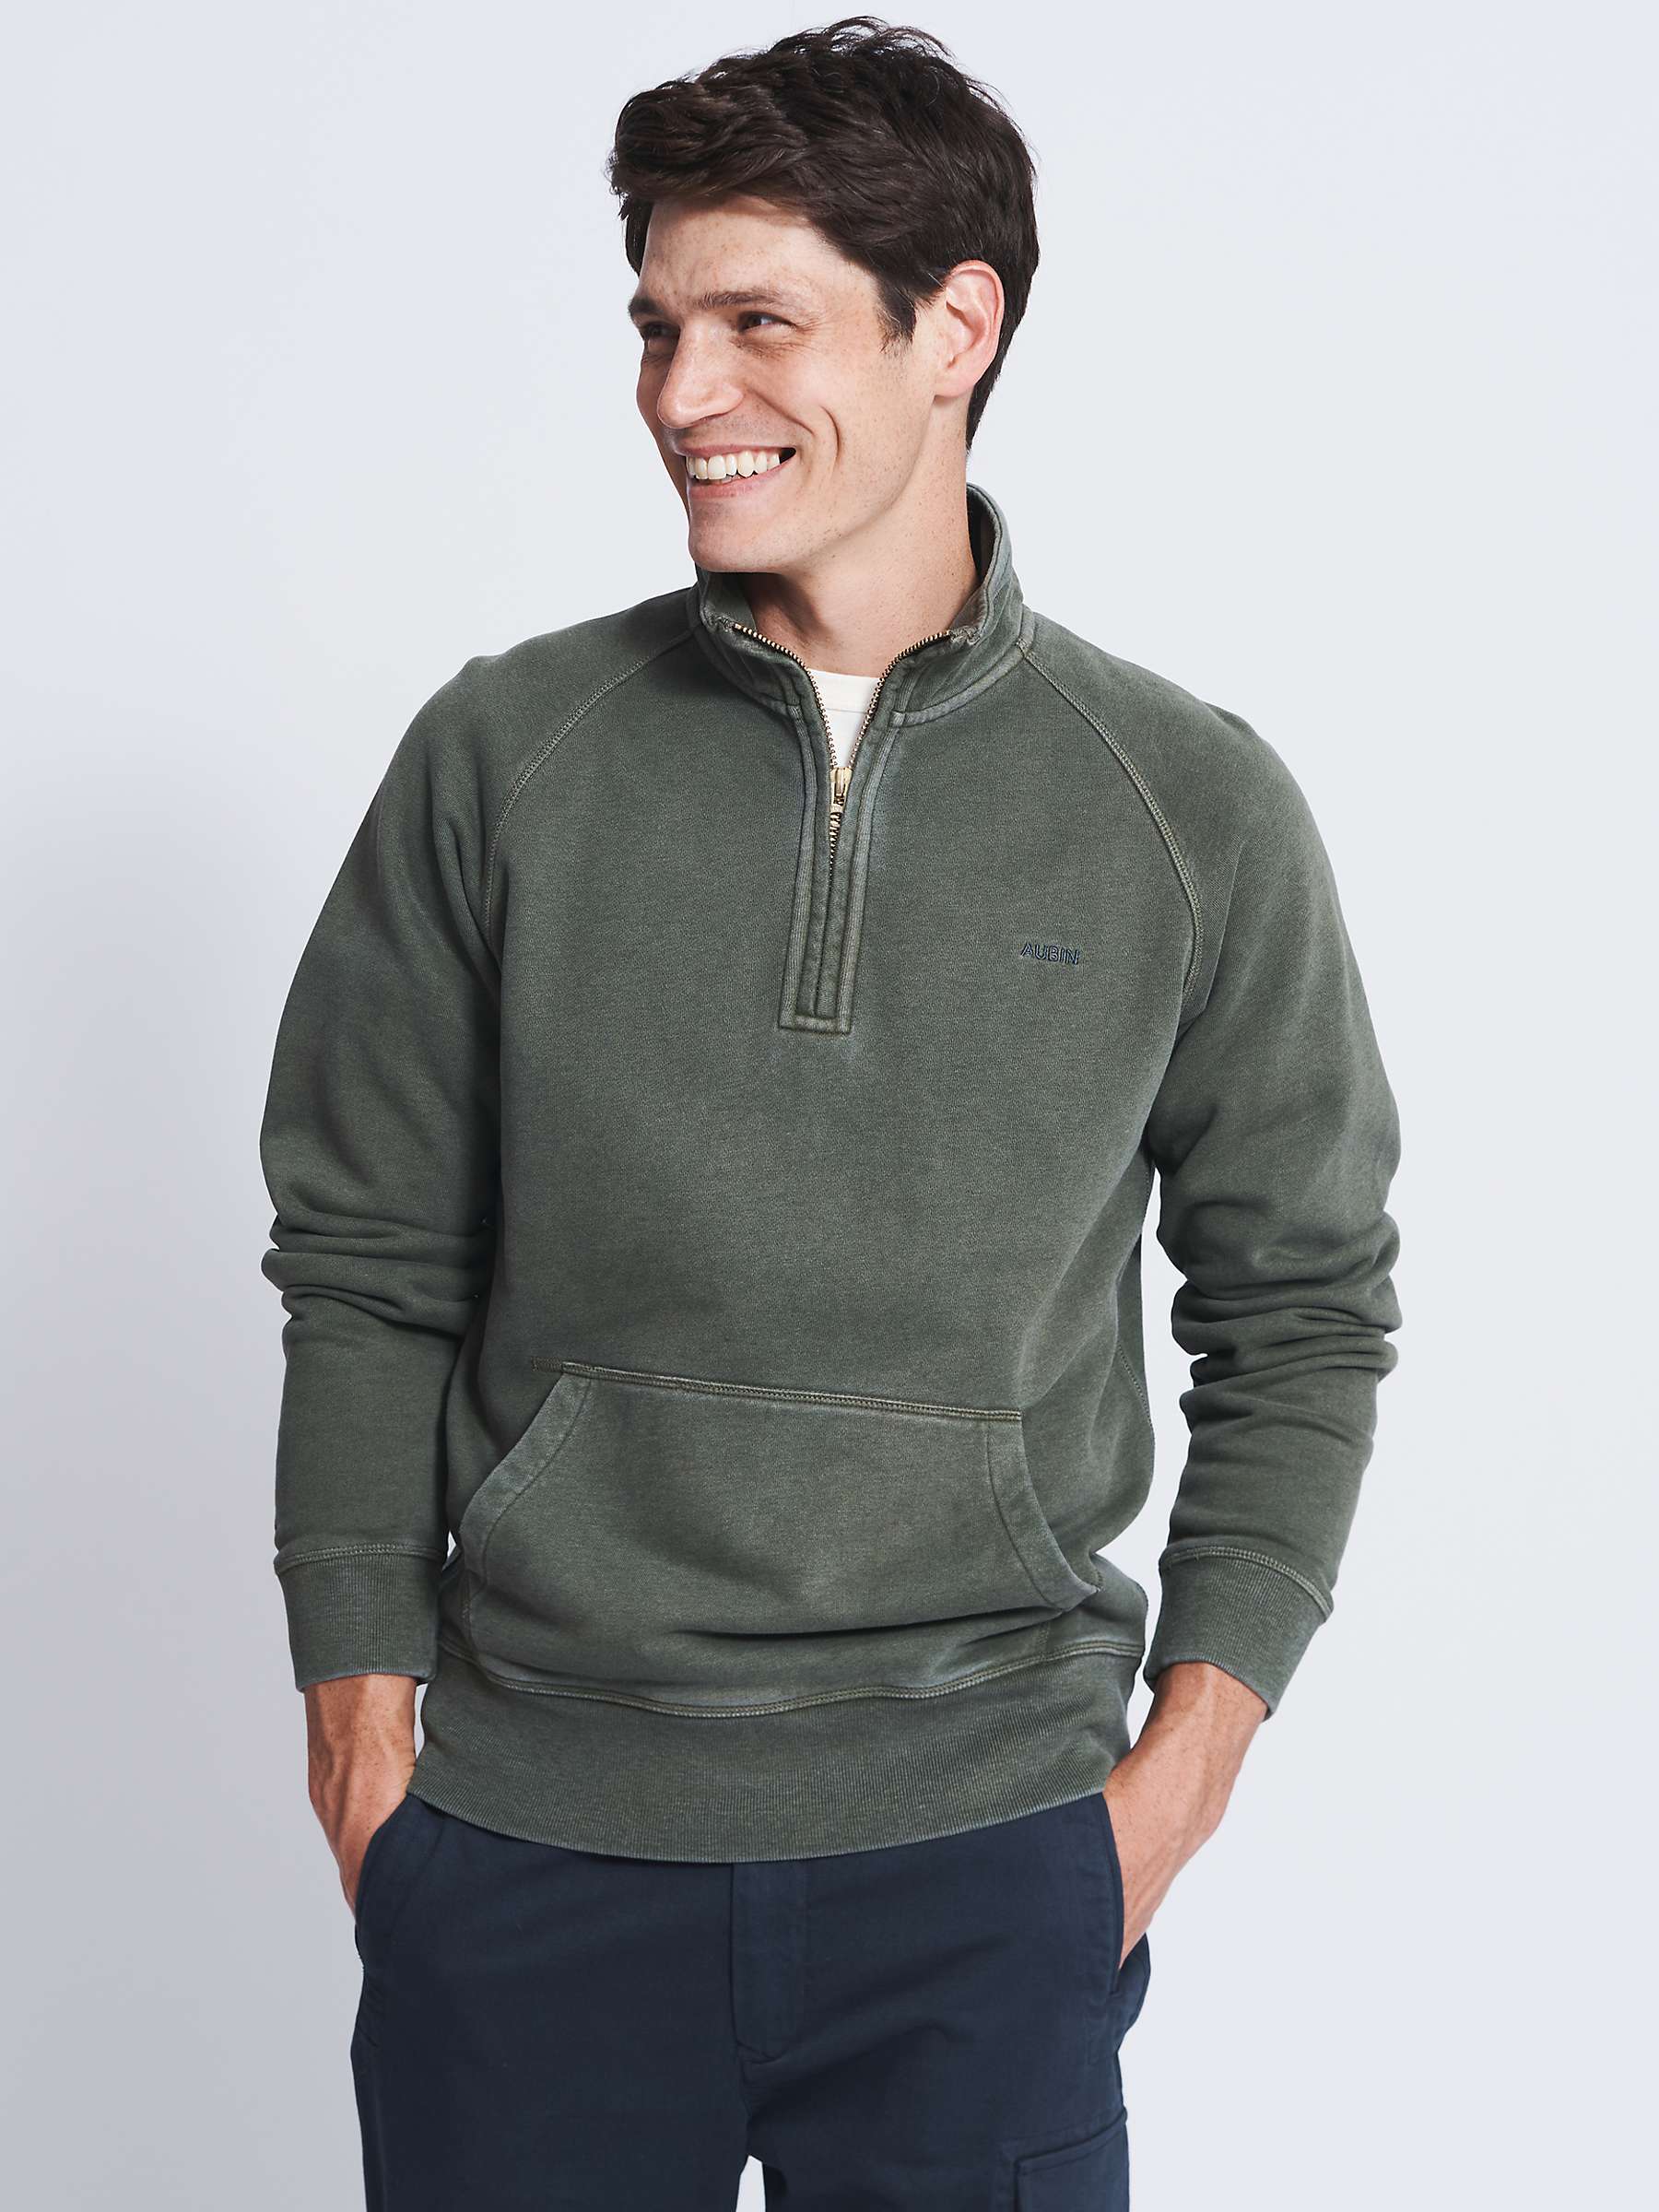 Buy Aubin Provost Half-Zip Sweatshirt Online at johnlewis.com